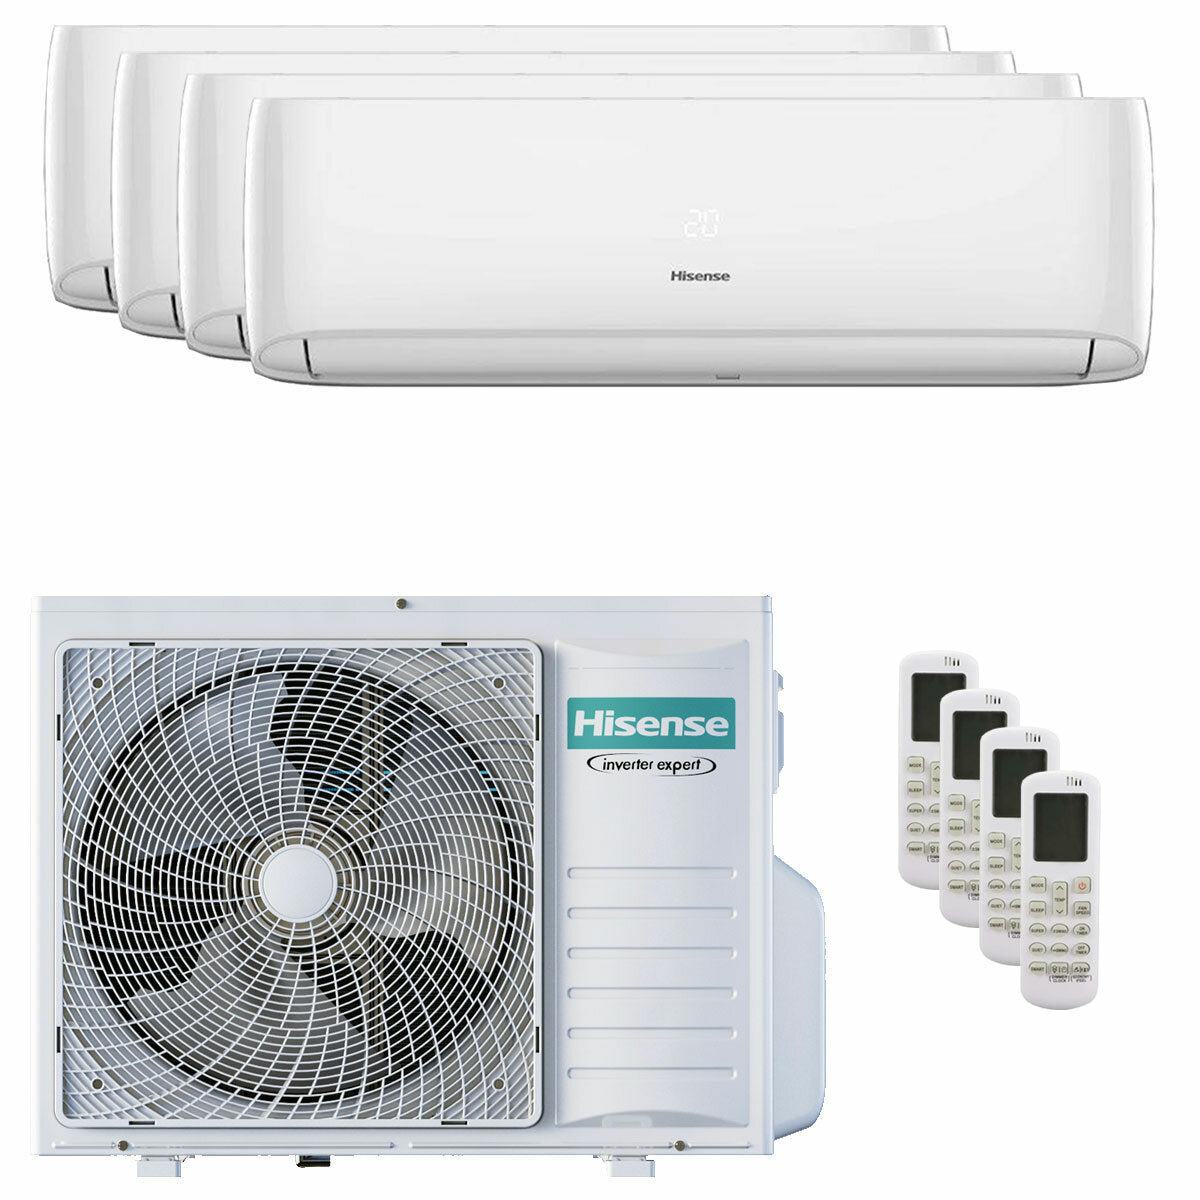 Hisense Hi-Comfort climatiseur split quadri 9000+9000+9000+12000 BTU onduleur A++ wifi unité extérieure 8 kW